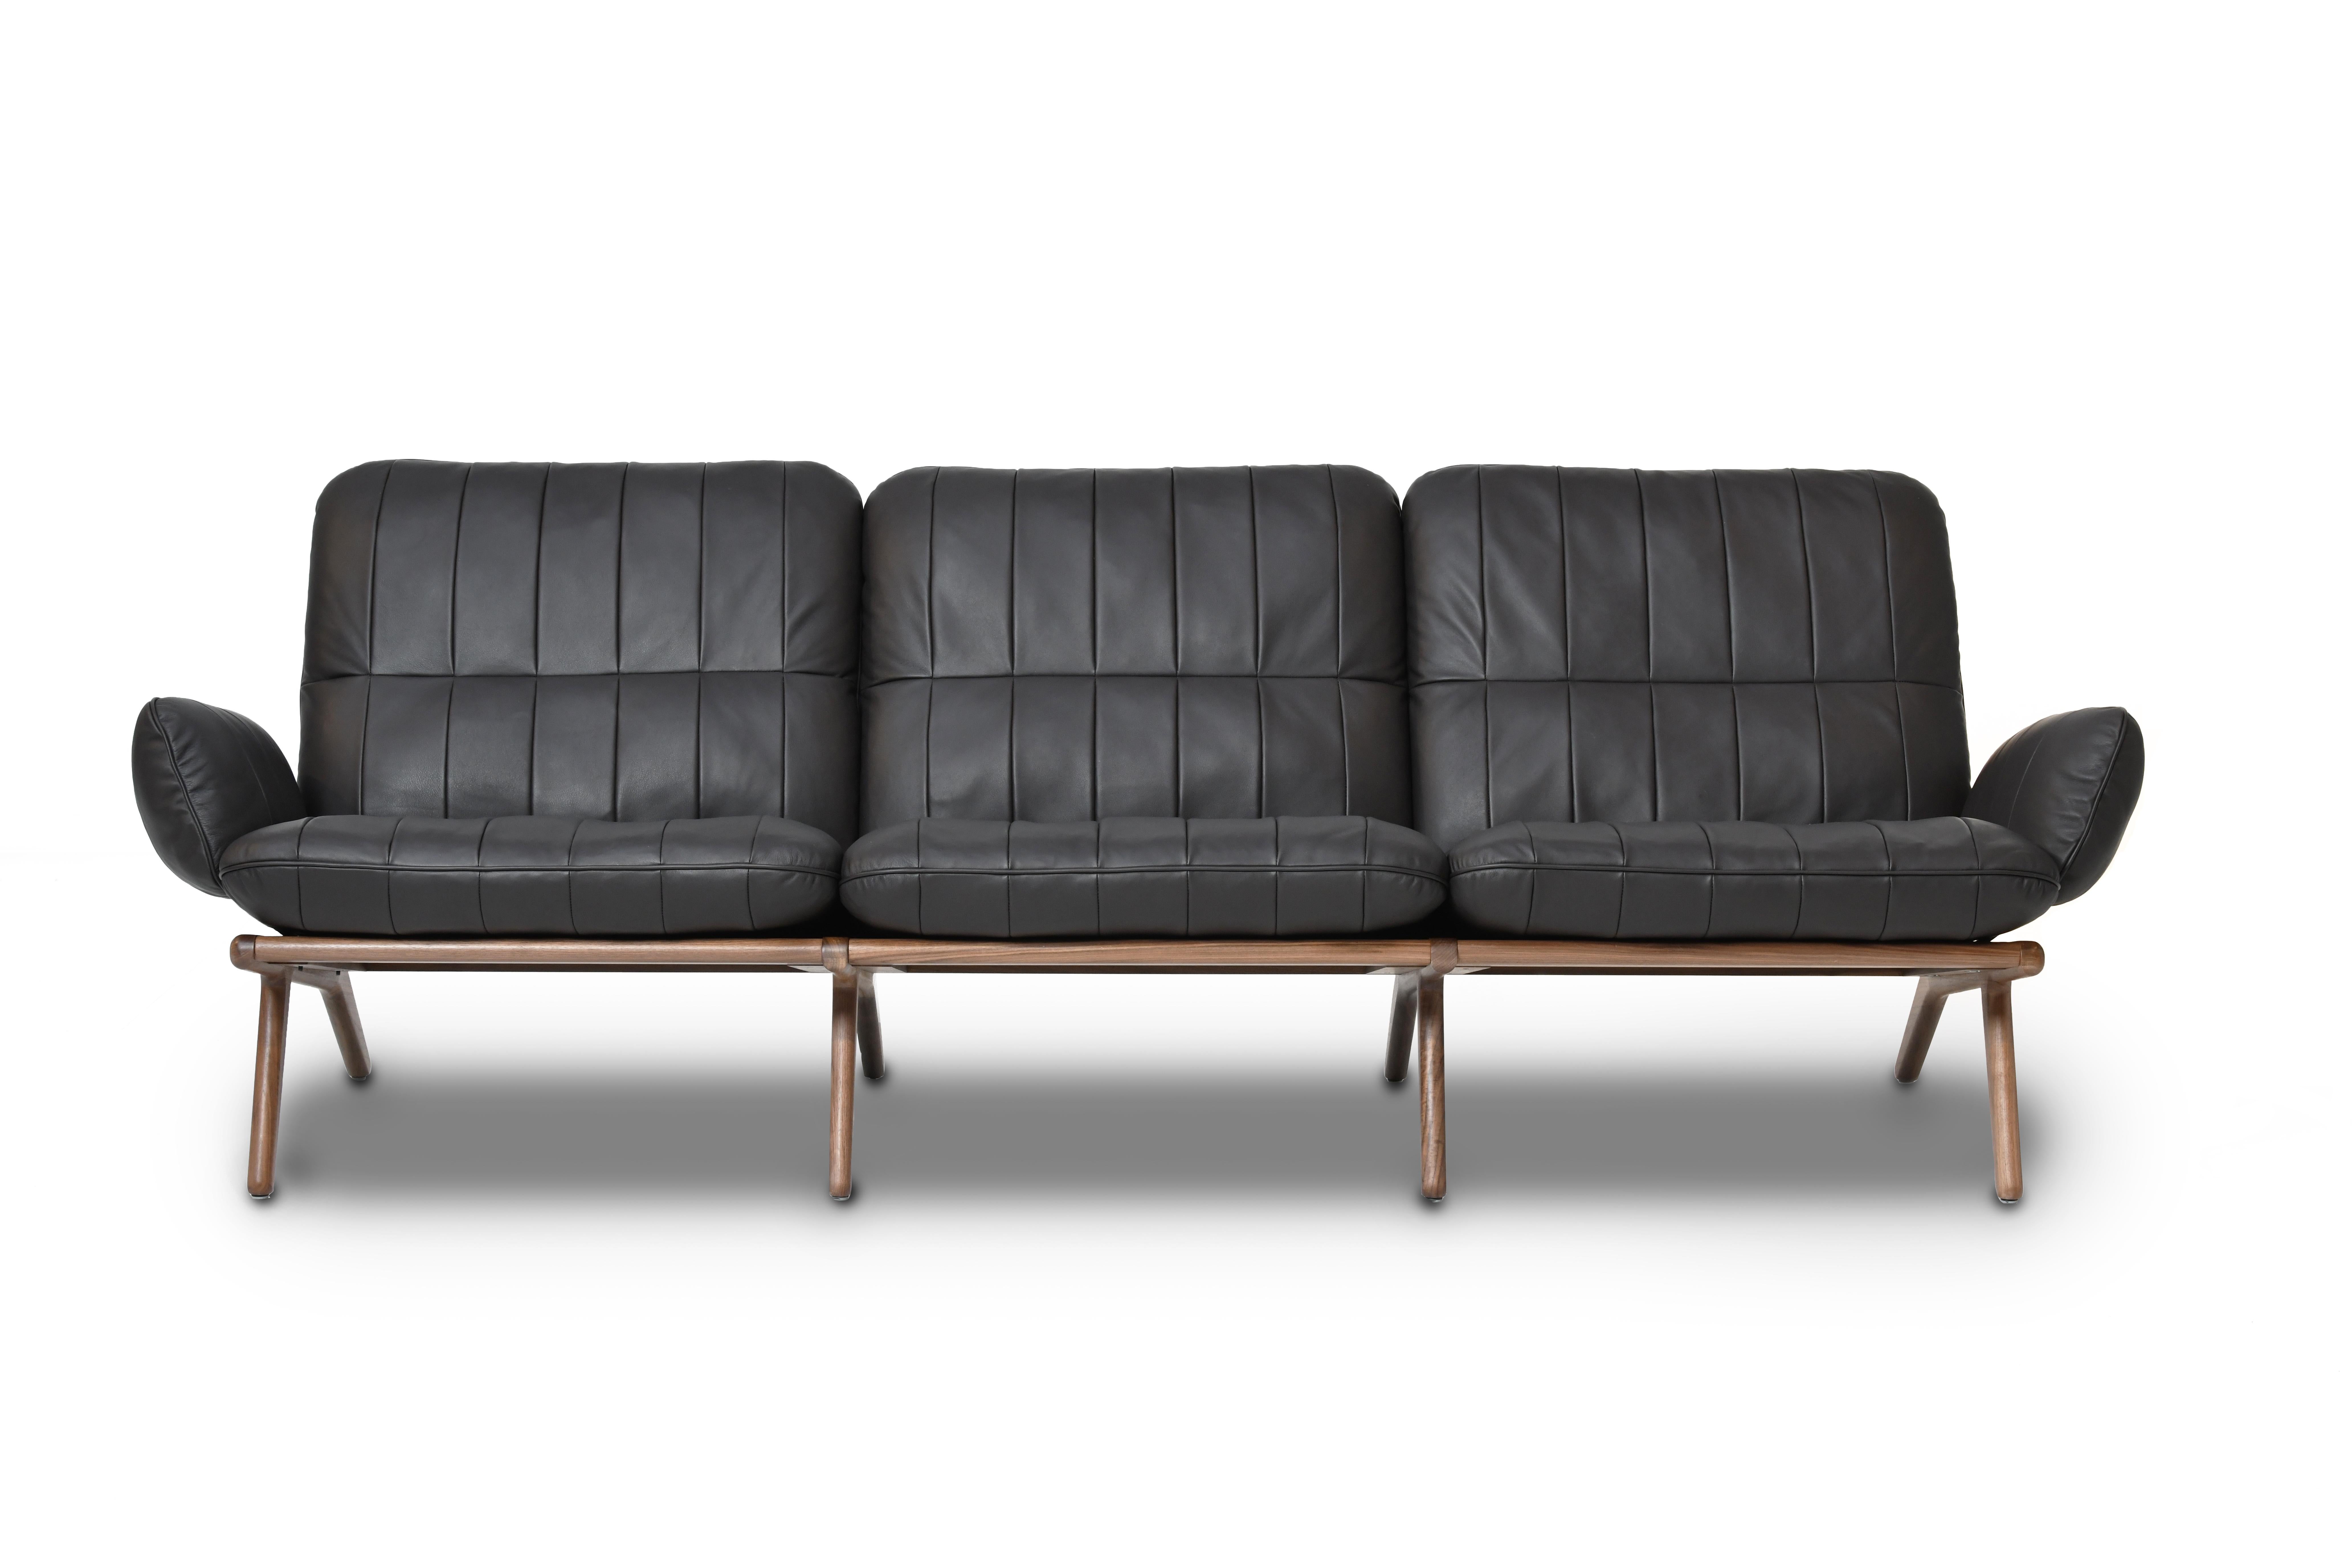 DS-531 sofa von De Sede
Abmessungen: T 55 x B 234 x H 80 cm
MATERIAL: Eiche, Leder

Die Preise können sich je nach den gewählten Materialien und der Größe ändern. 

Einfach schön. Oder schön einfach.
 
Wer sich auf den Sitzmöbeln der Serie DS-531